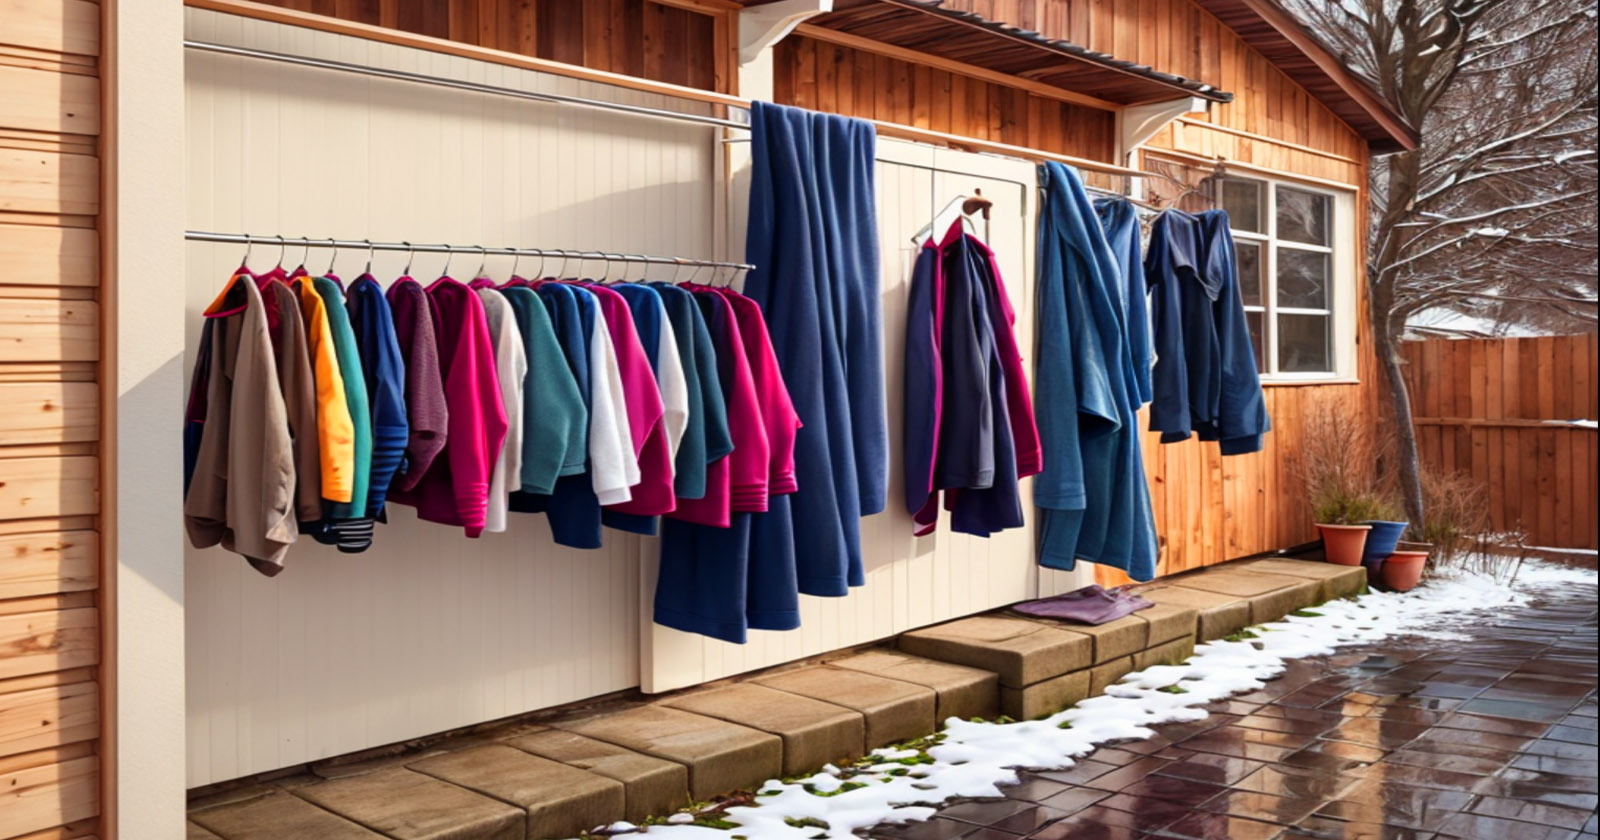 Dica eficientes para secar as roupas mais rápido em dias frios